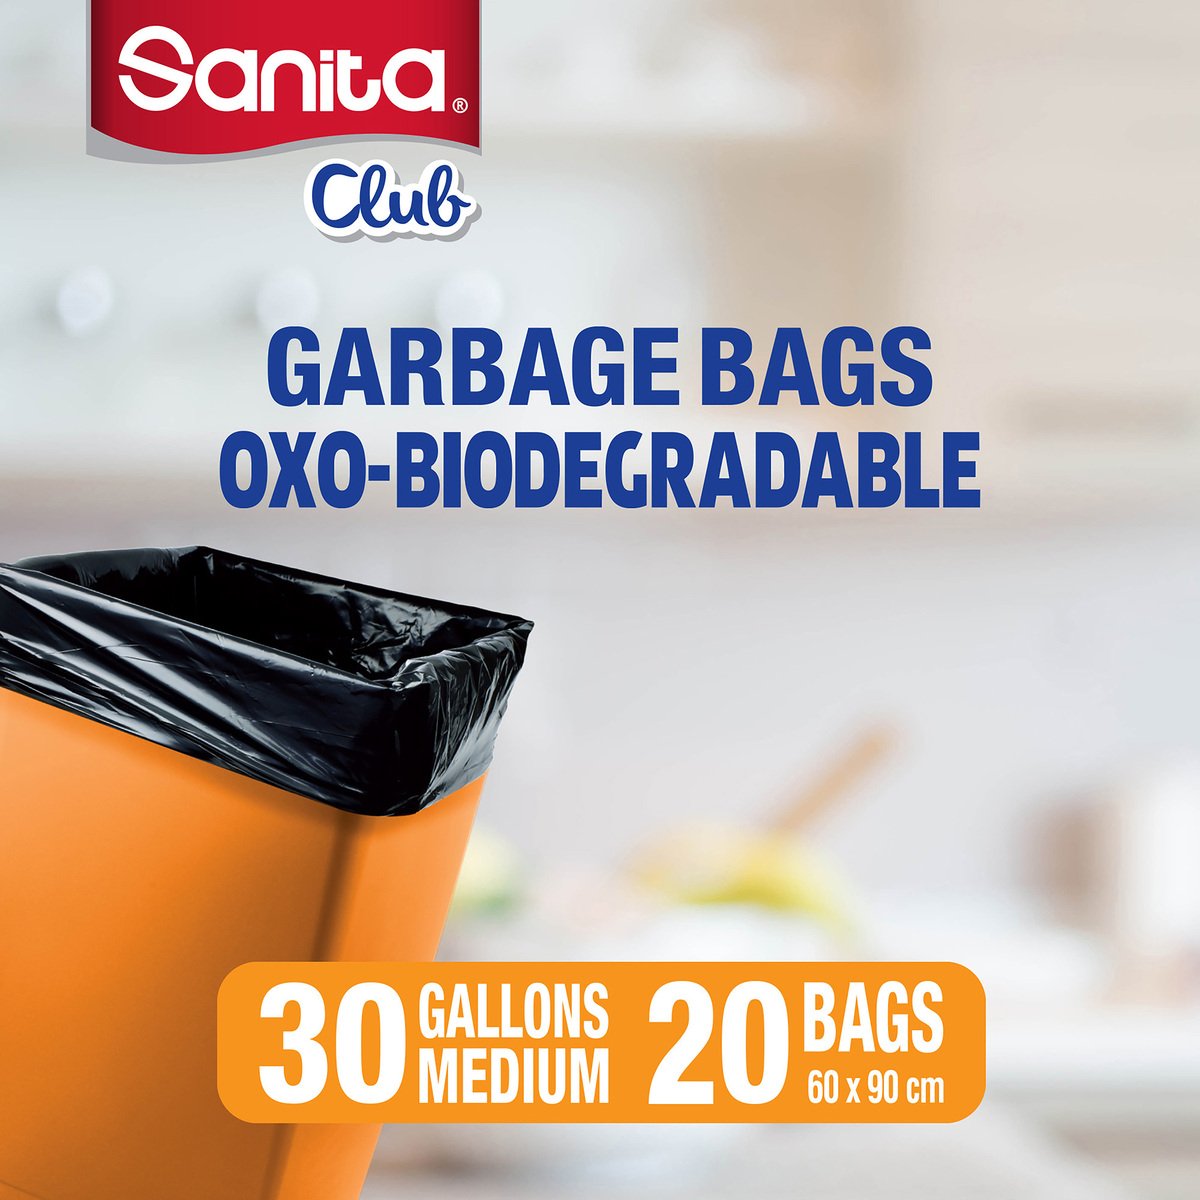 Sanita Club Biodegradable Garbage Bags 30 Gallons Medium Size 60 x 90cm 20pcs